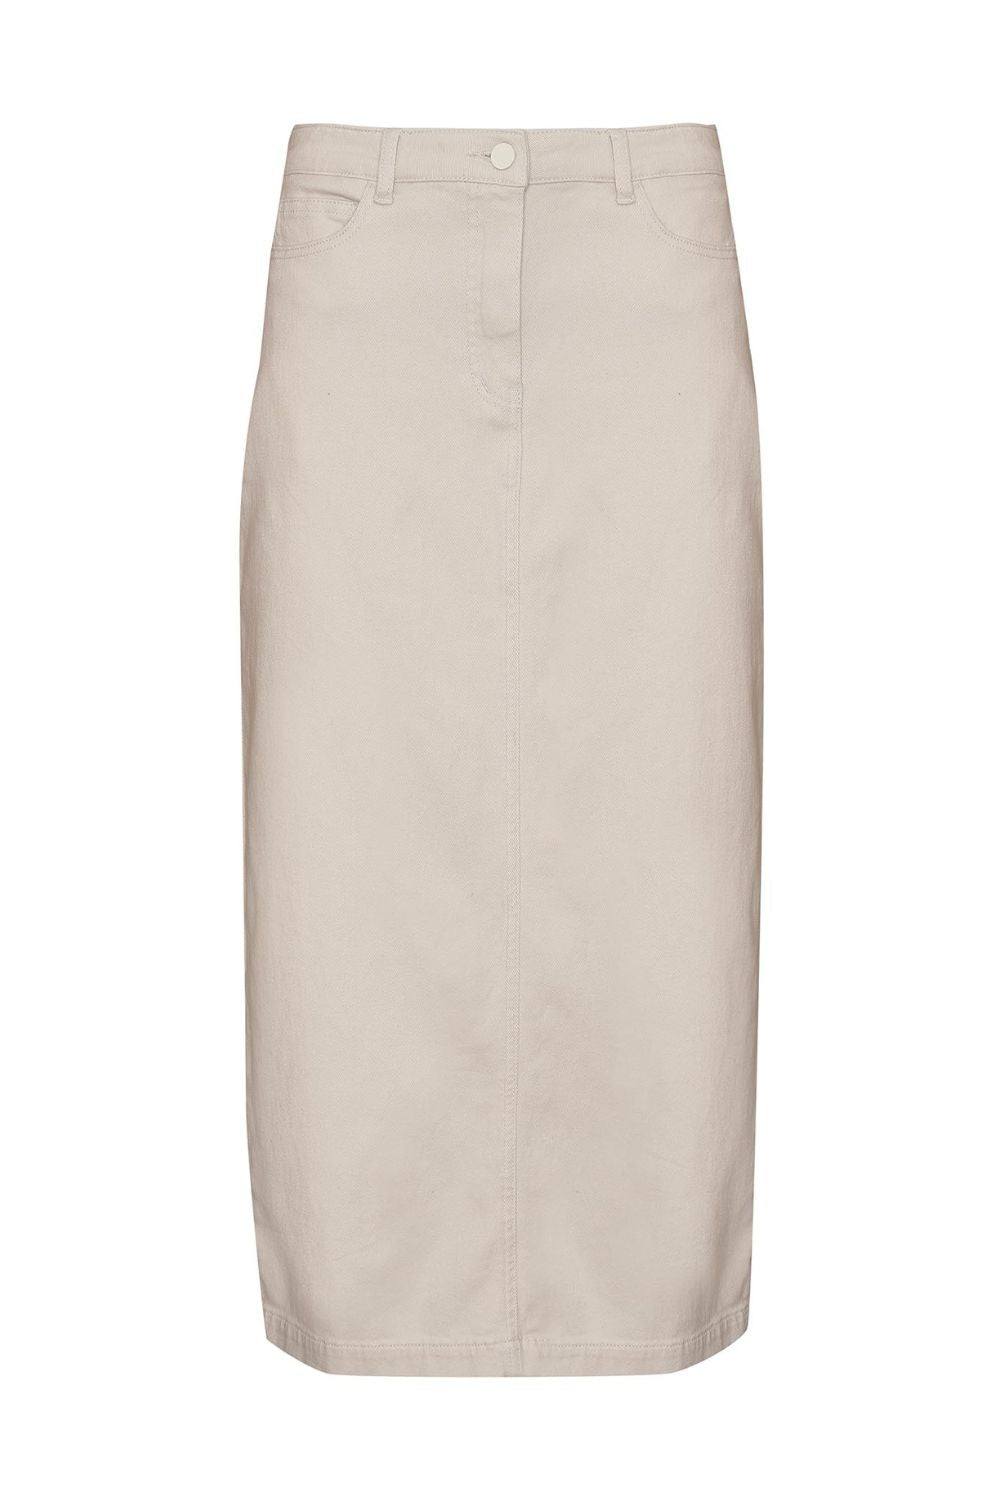 stone, cream midi skirt, denim midi skirt, denim skirt, side and back pockets, product image